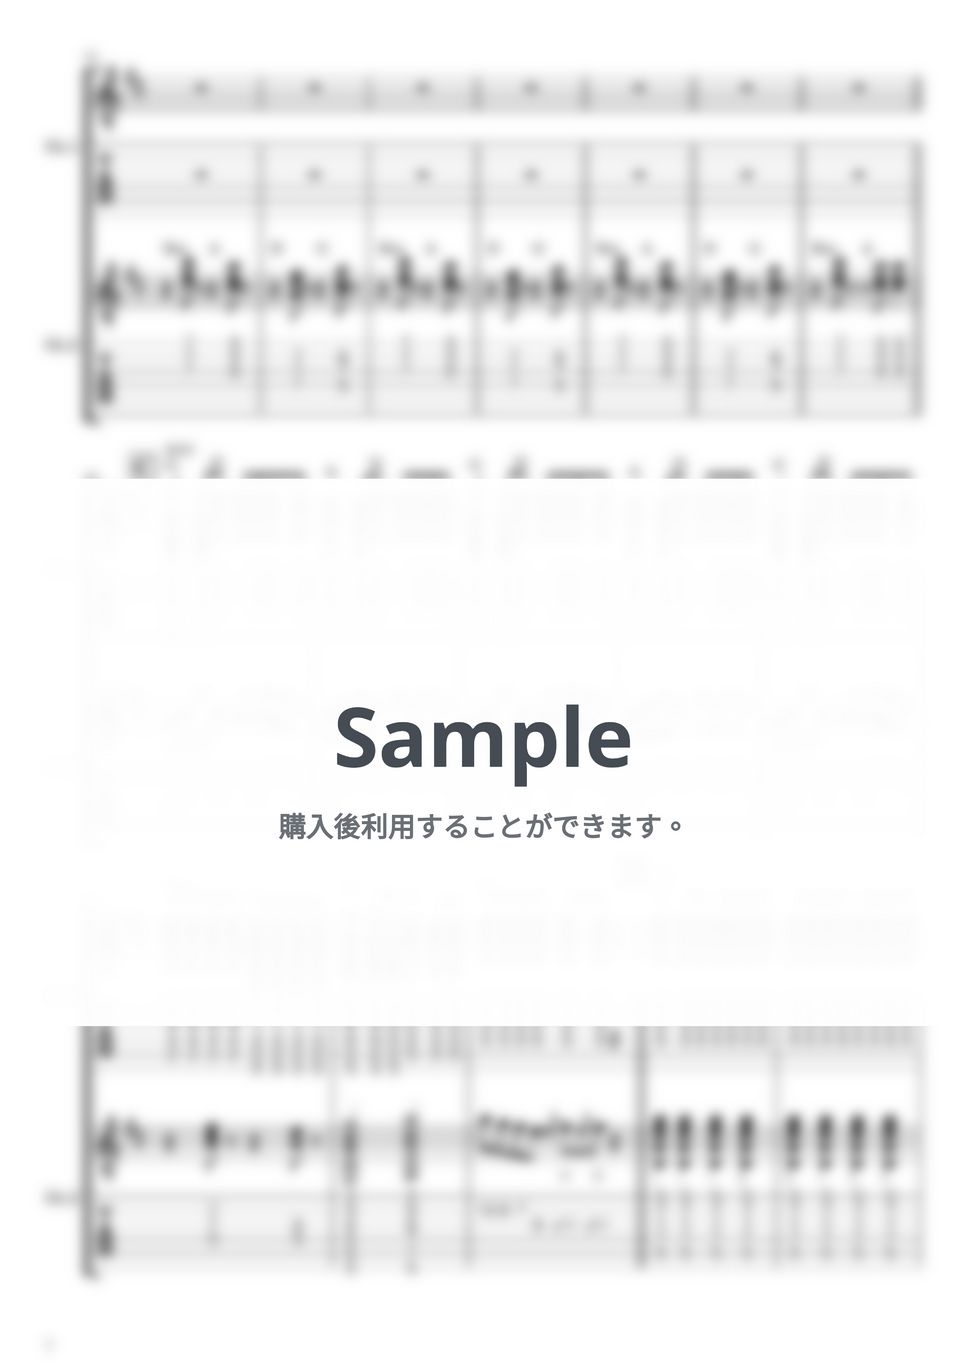 カネコアヤノ - 天使とスーパーカー (ギターTAB譜) by やまさんルーム